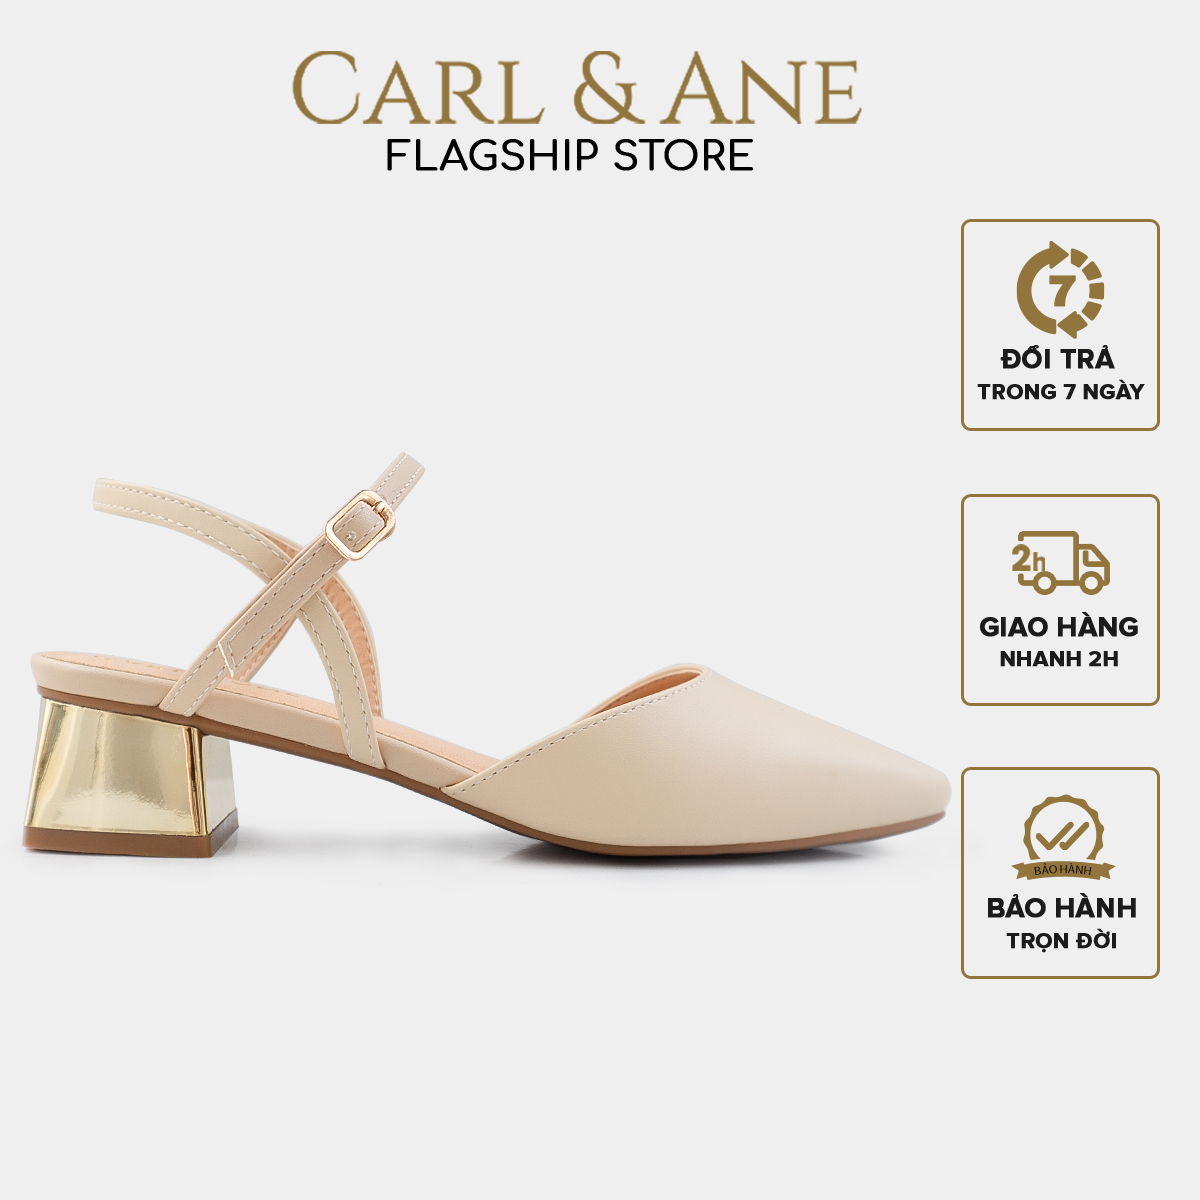 Carl & Ane – Giày cao gót mũi nhọn phối dây quai mảnh thời trang công sở cao 3.5cm màu nude – CL029